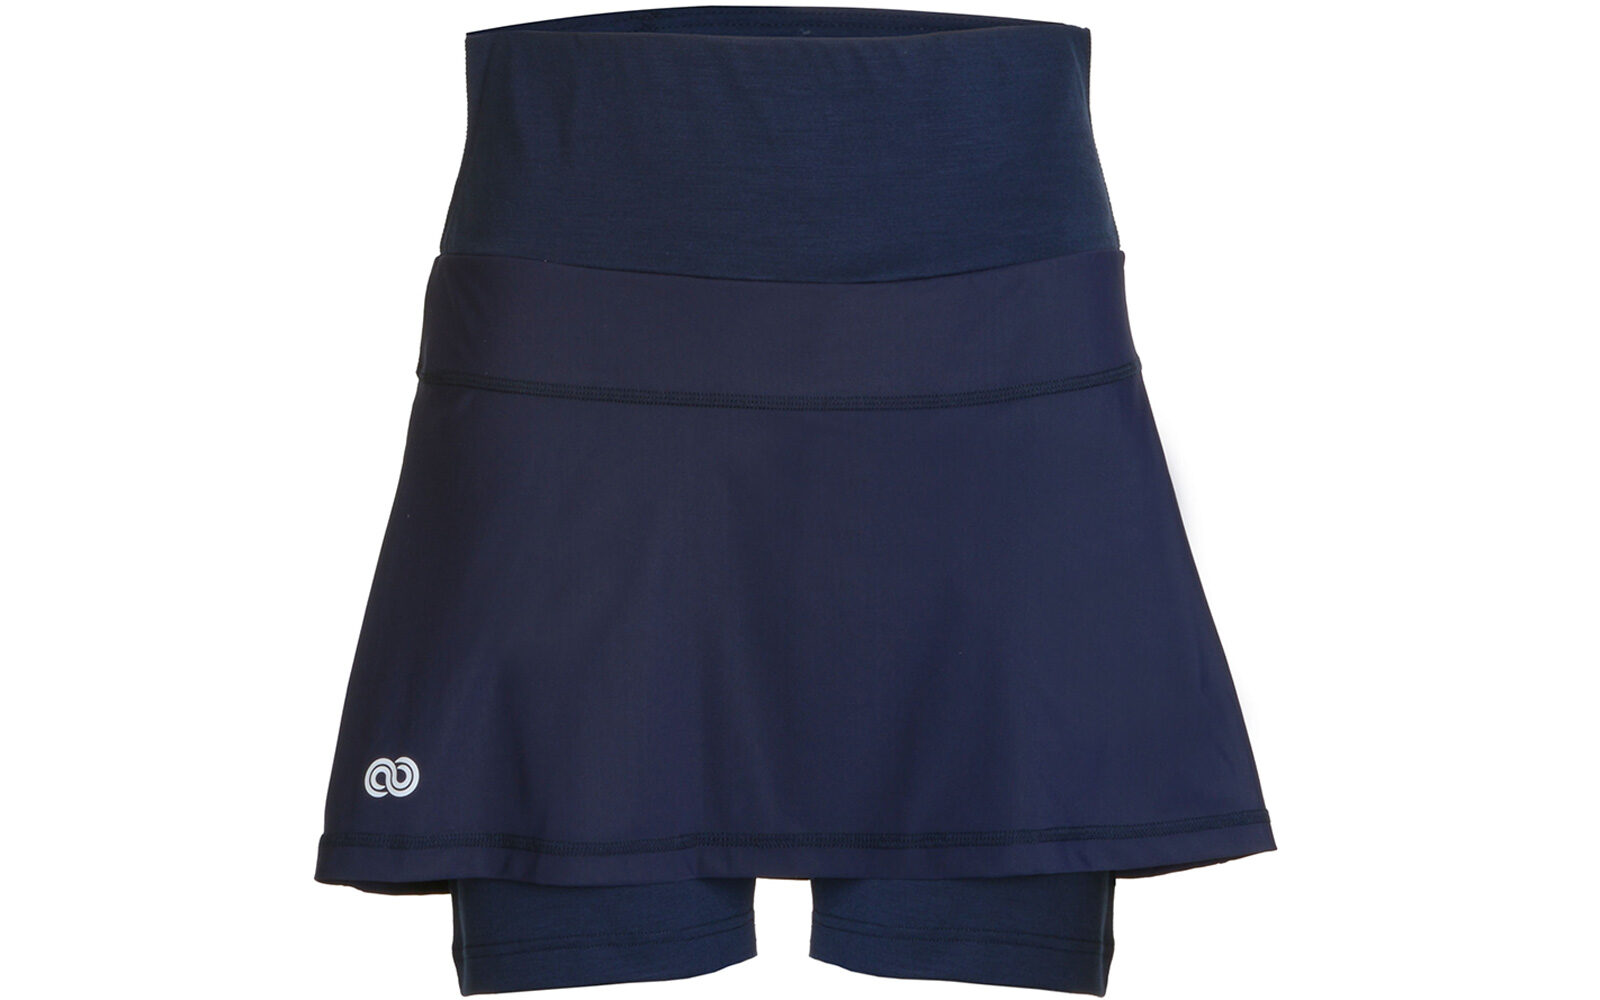 Rewoolution Kaira W’s Skirt, in tessuto jersey Reda di lana merino, traspirante, con inserti in Sensitive per accrescere comfort ed elasticità. Euro 90